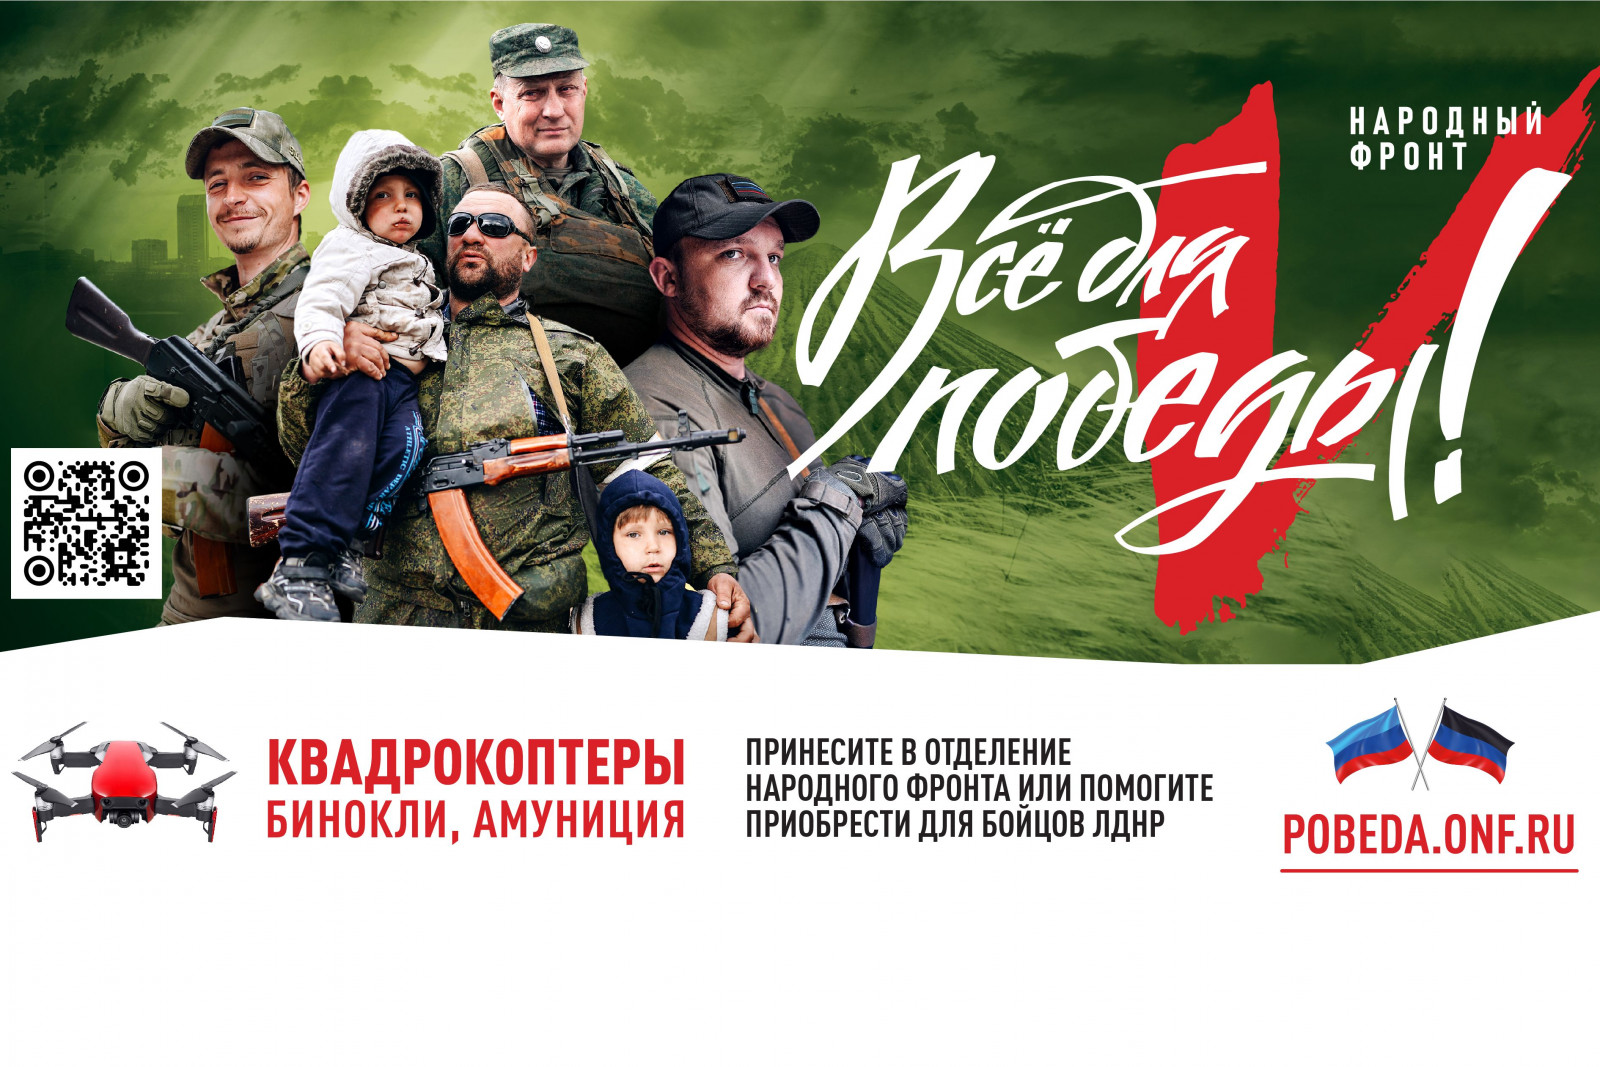 «Всё для Победы»: поддержи бойцов Донецкой и Луганской народных республик!